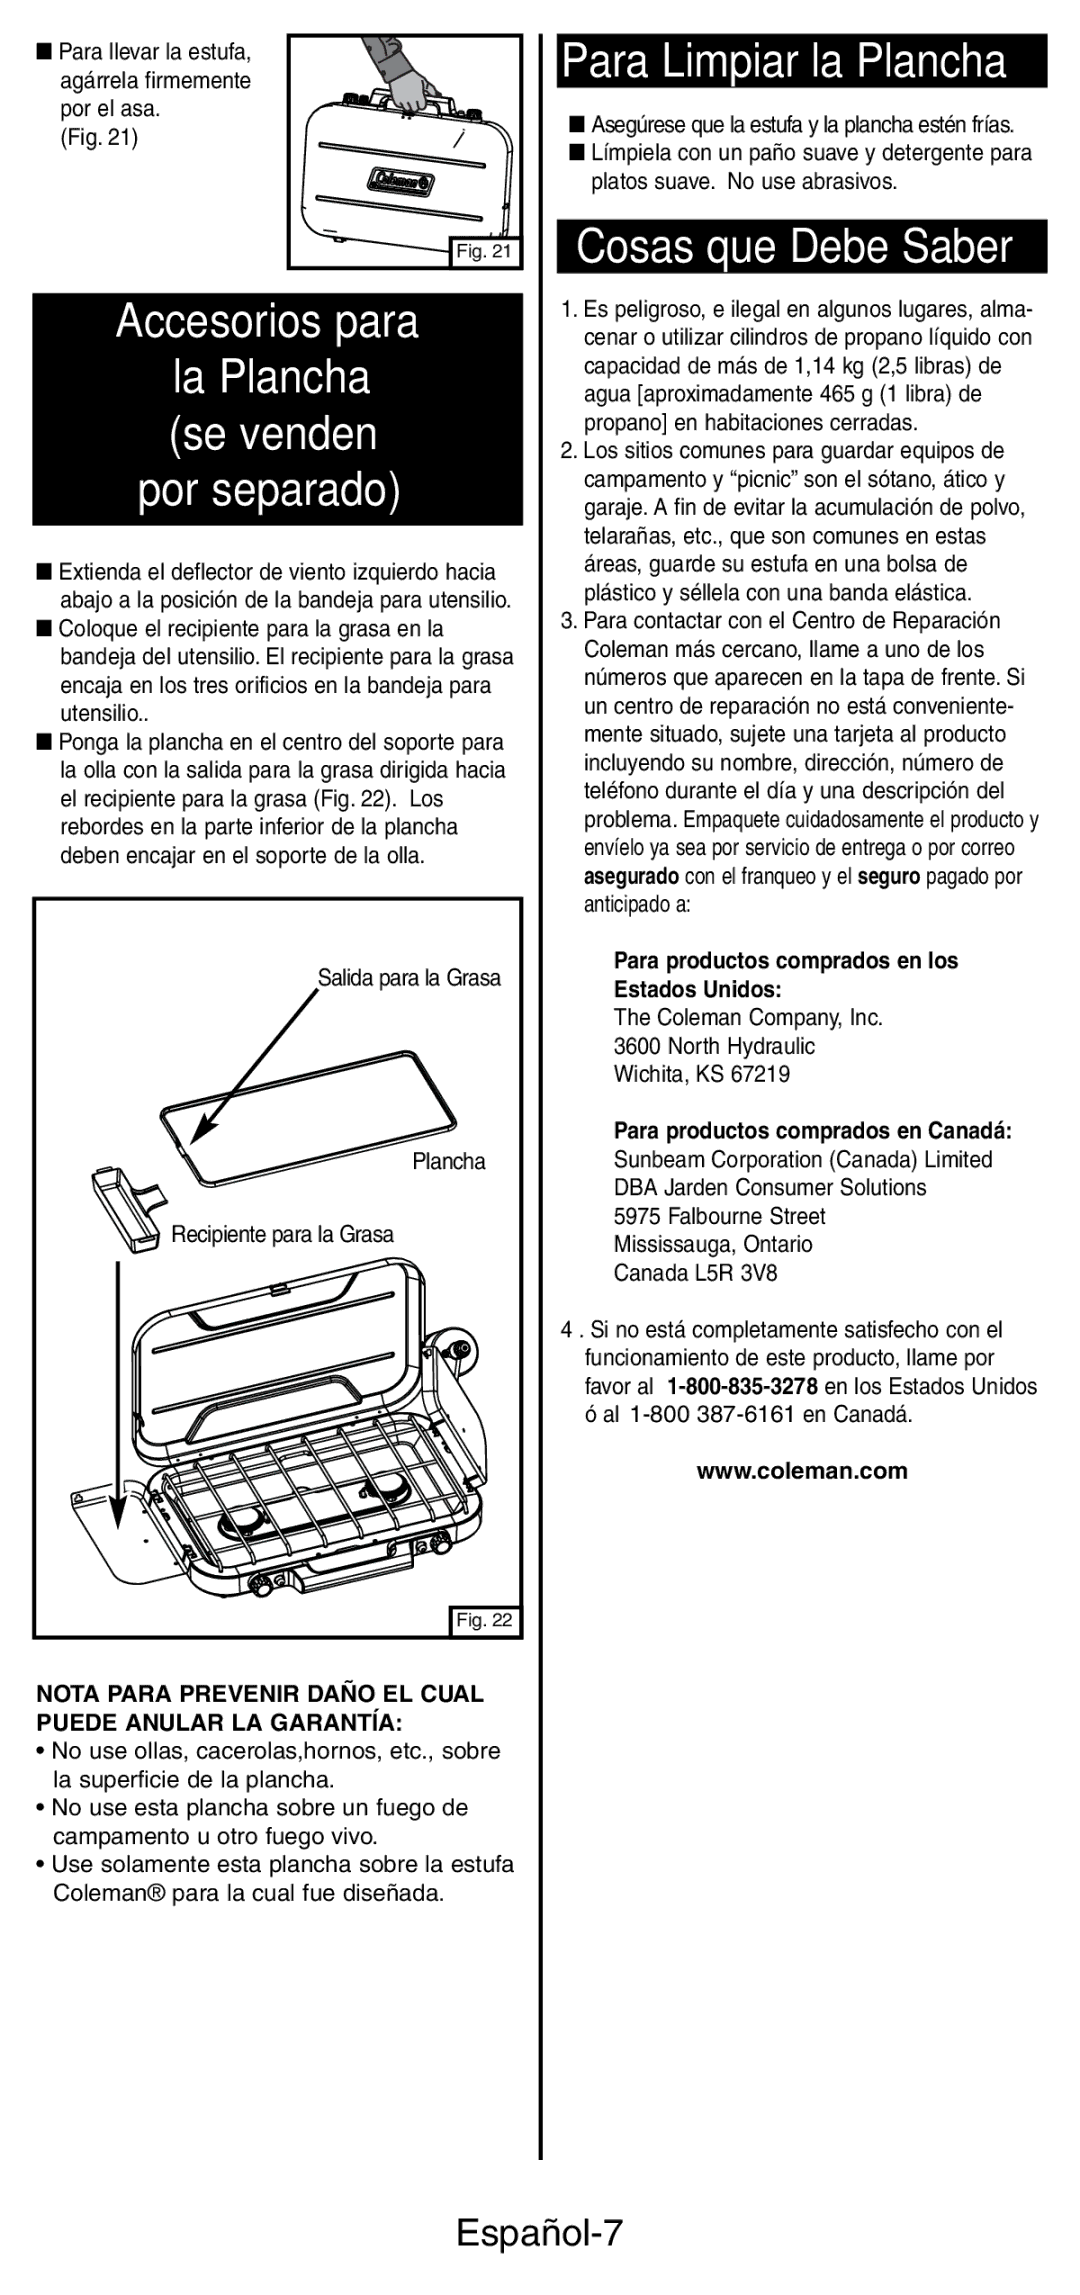 Coleman 5441 Series manual Para Limpiar la Plancha, Cosas que Debe Saber Accesorios para, Español-7 